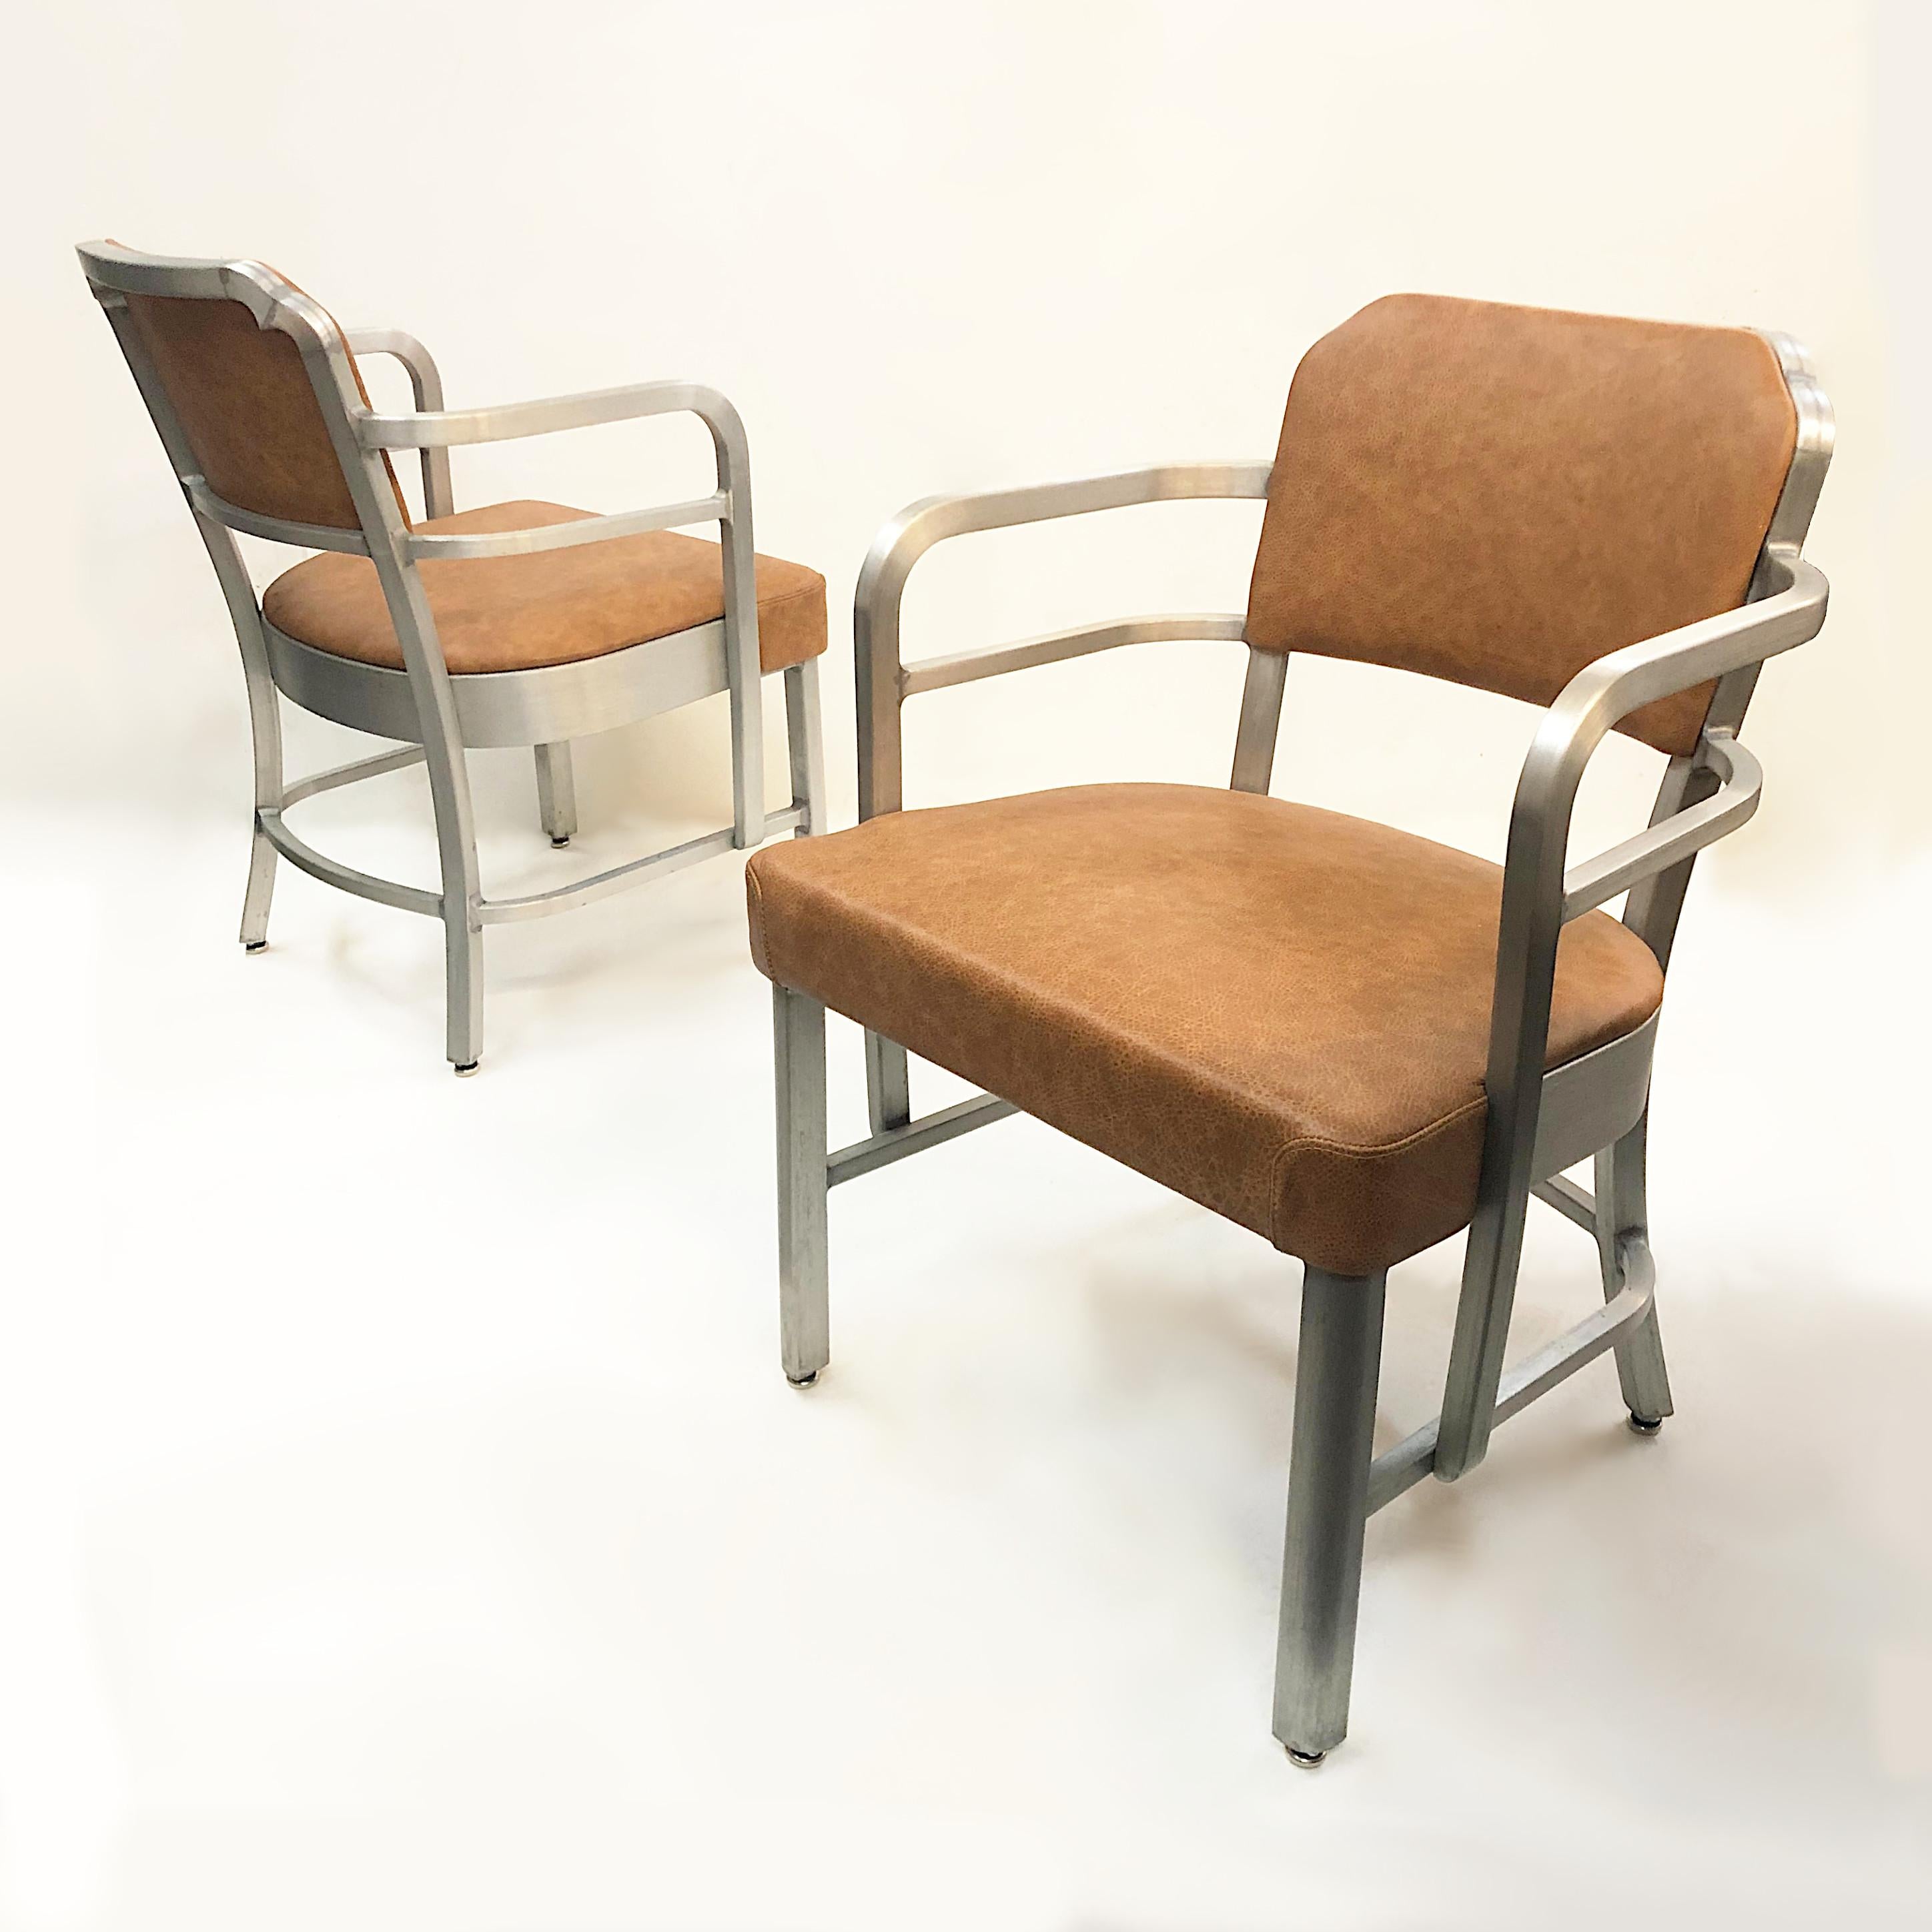 Il s'agit d'une magnifique paire de chaises d'appoint rares de la société GoodForm/General Fireproofing Company. Les chaises sont dotées d'un cadre en aluminium brossé, d'un nouveau cuir brun vieilli et de lignes Art-Déco fantastiques. L'aluminium